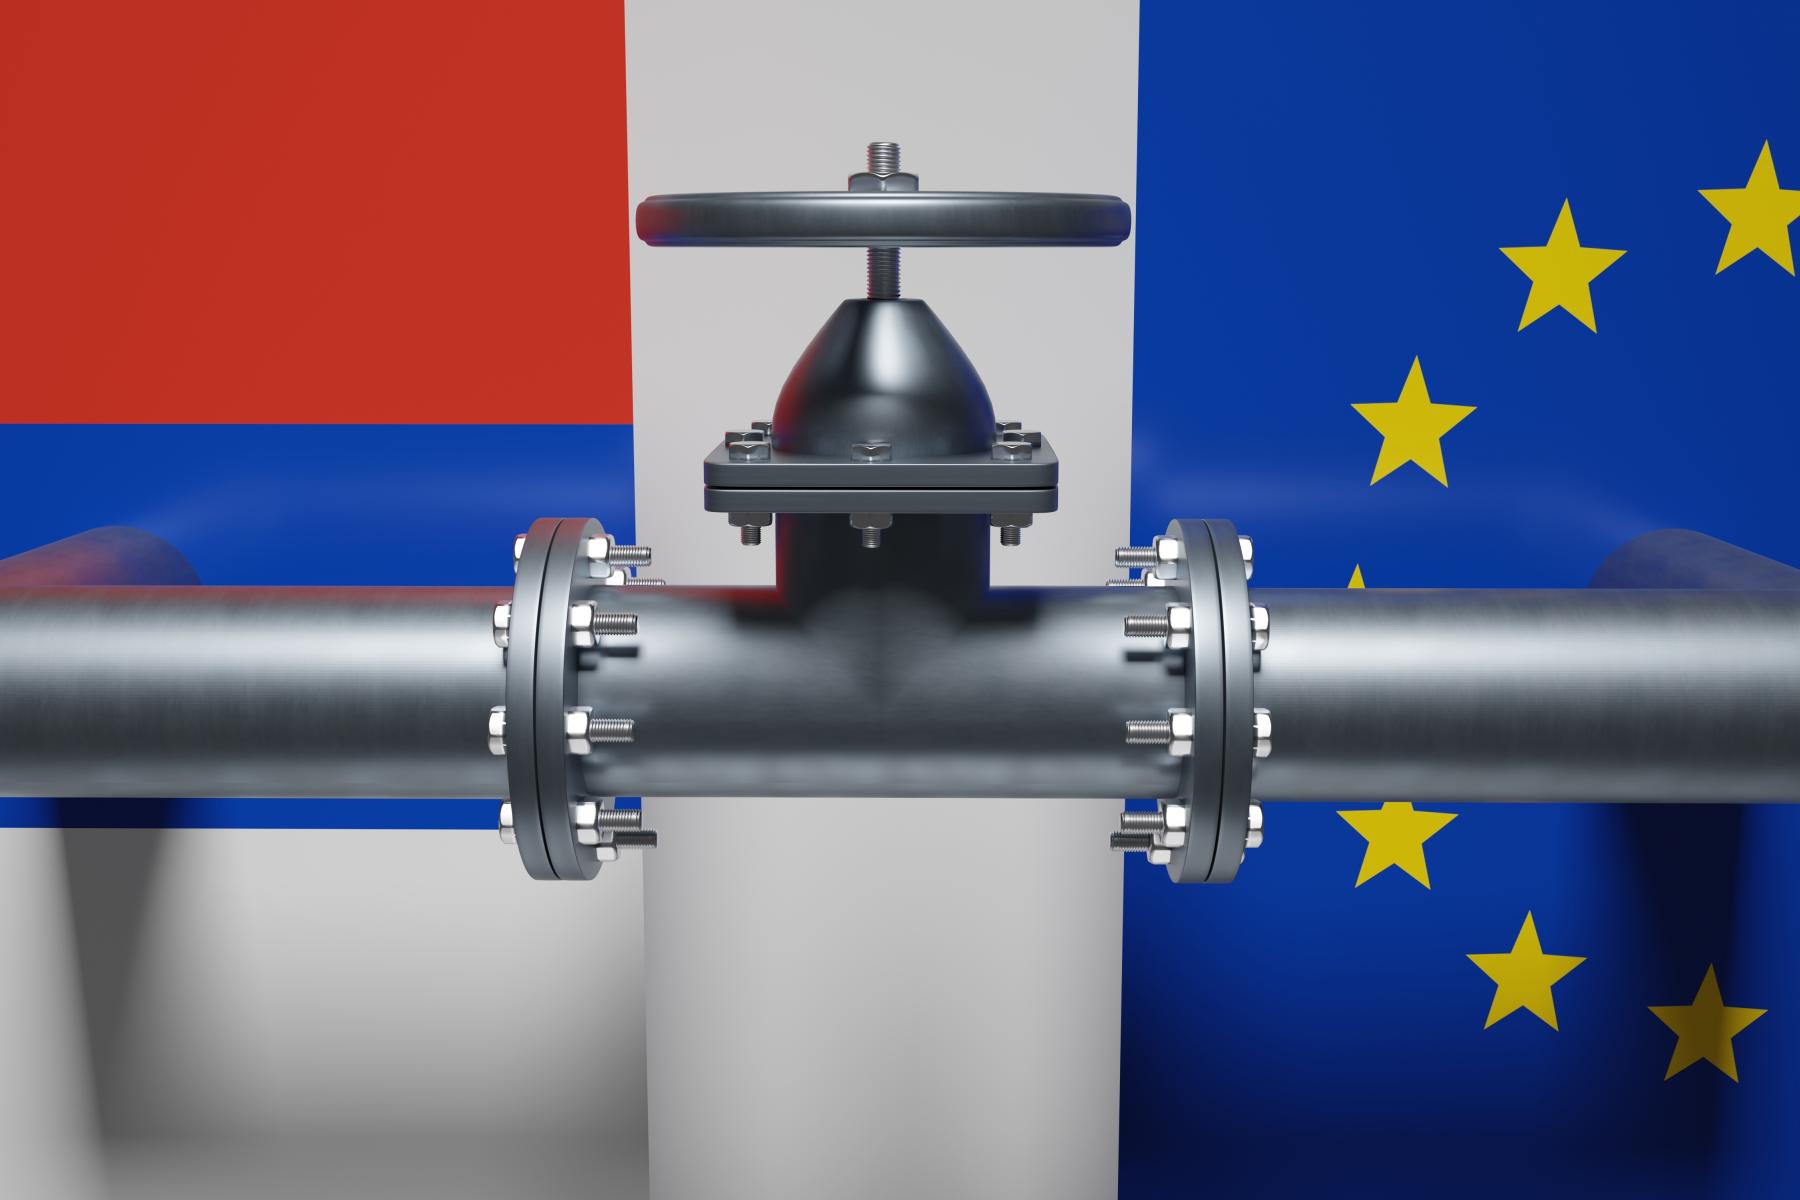 Gasledning mellem Rusland og EU - Den energipolitiske enighed i EU er ved at smuldre på grund af vestlige landes utålmodighed